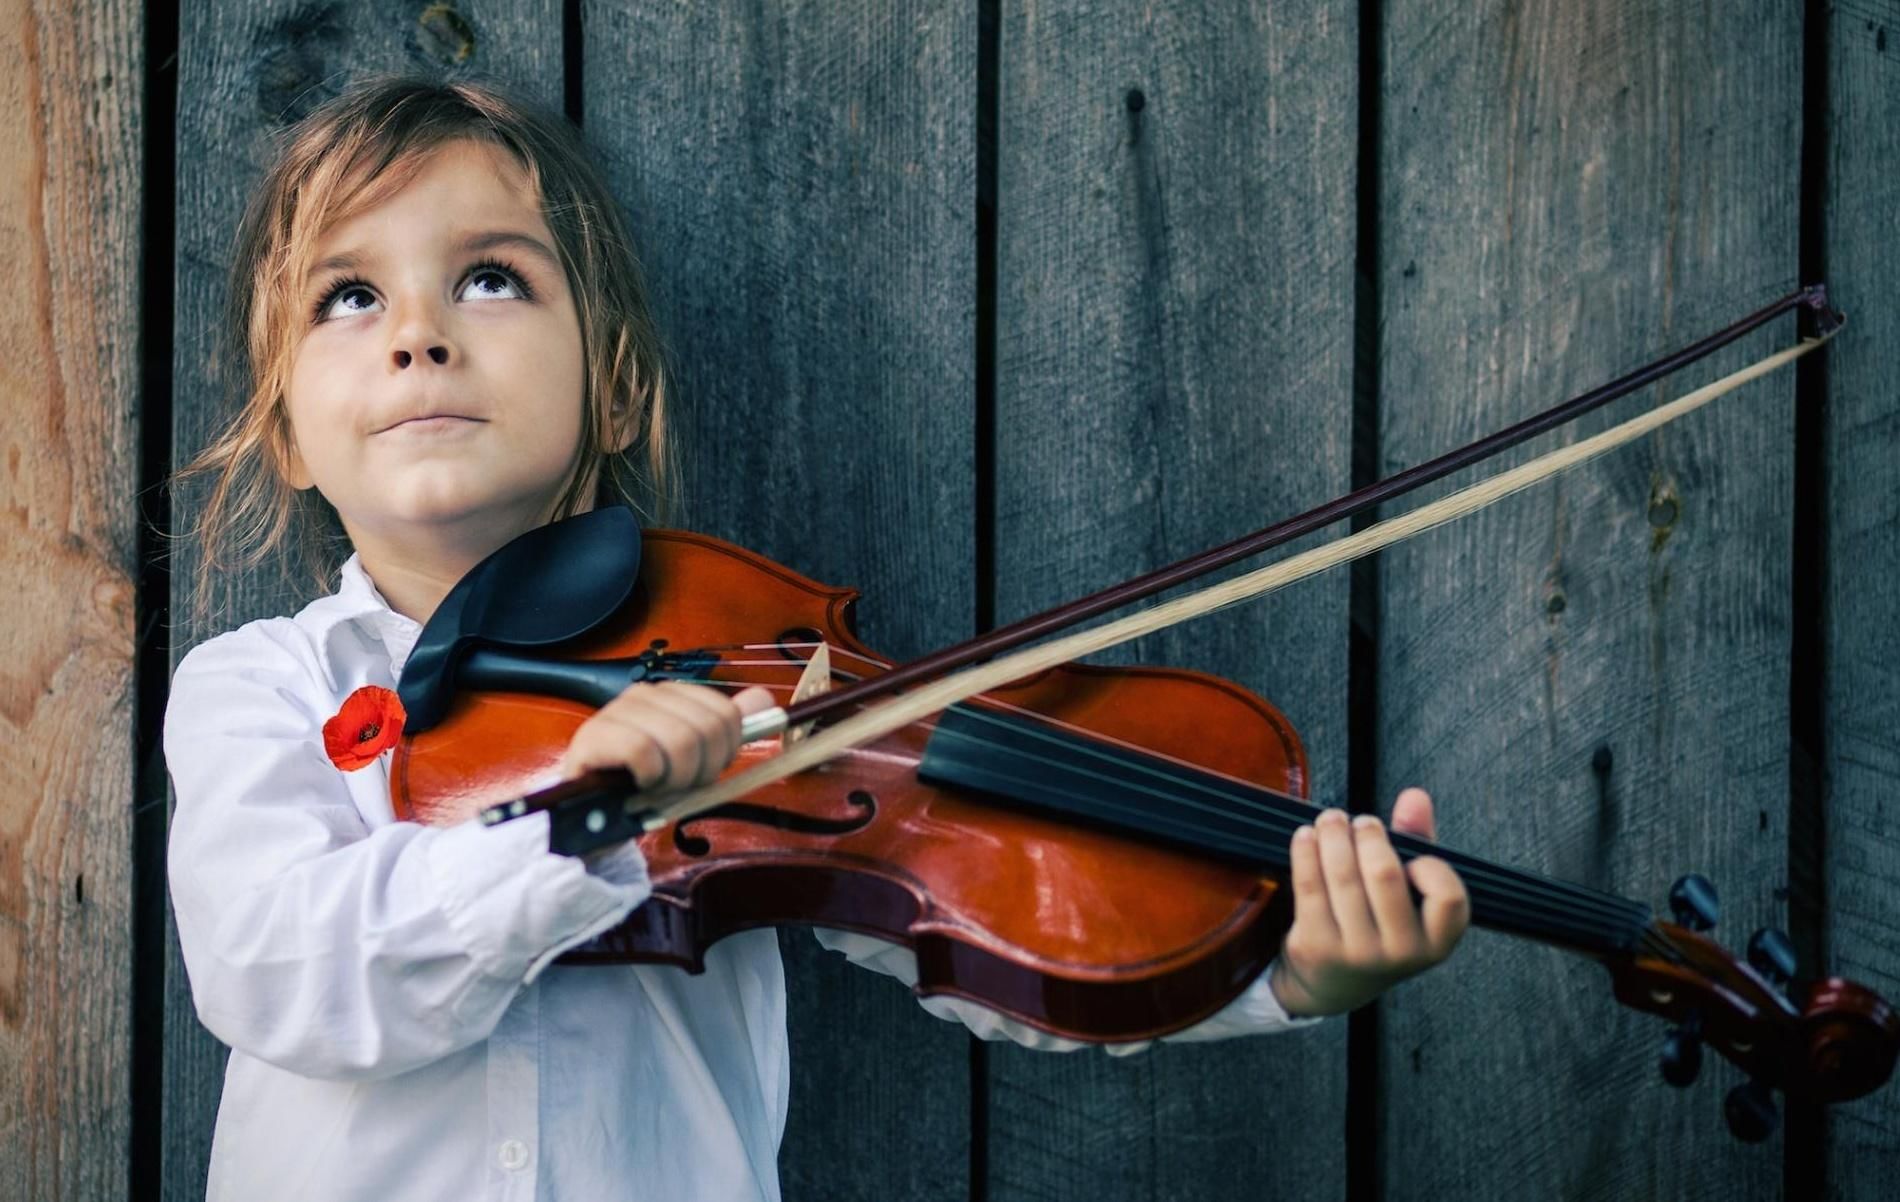 Скрипичный ребенок. Алиса Бельская. Судзуки скрипач. Музыкальные инструменты для детей. Дети играющие на музыкальных инструментах.